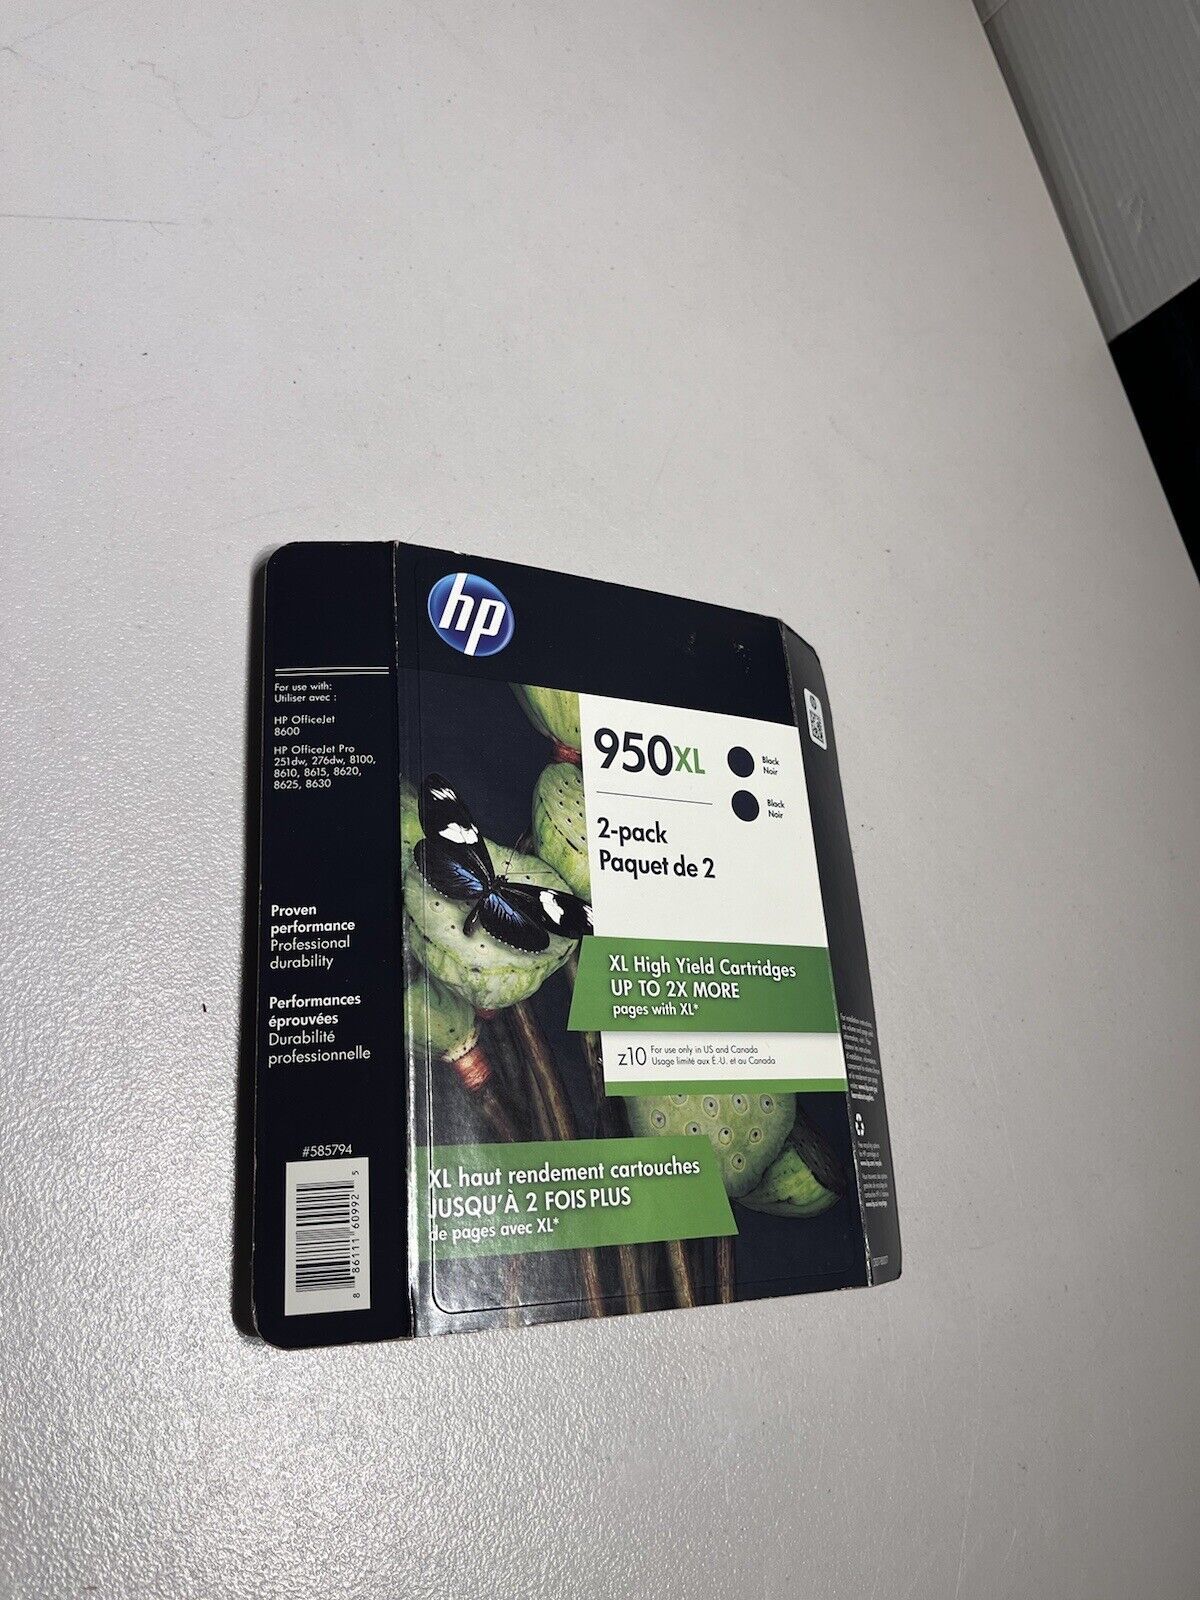 Genuine HP 950XL Black Ink Cartridges High Yield 2 Pack EXP 9/19